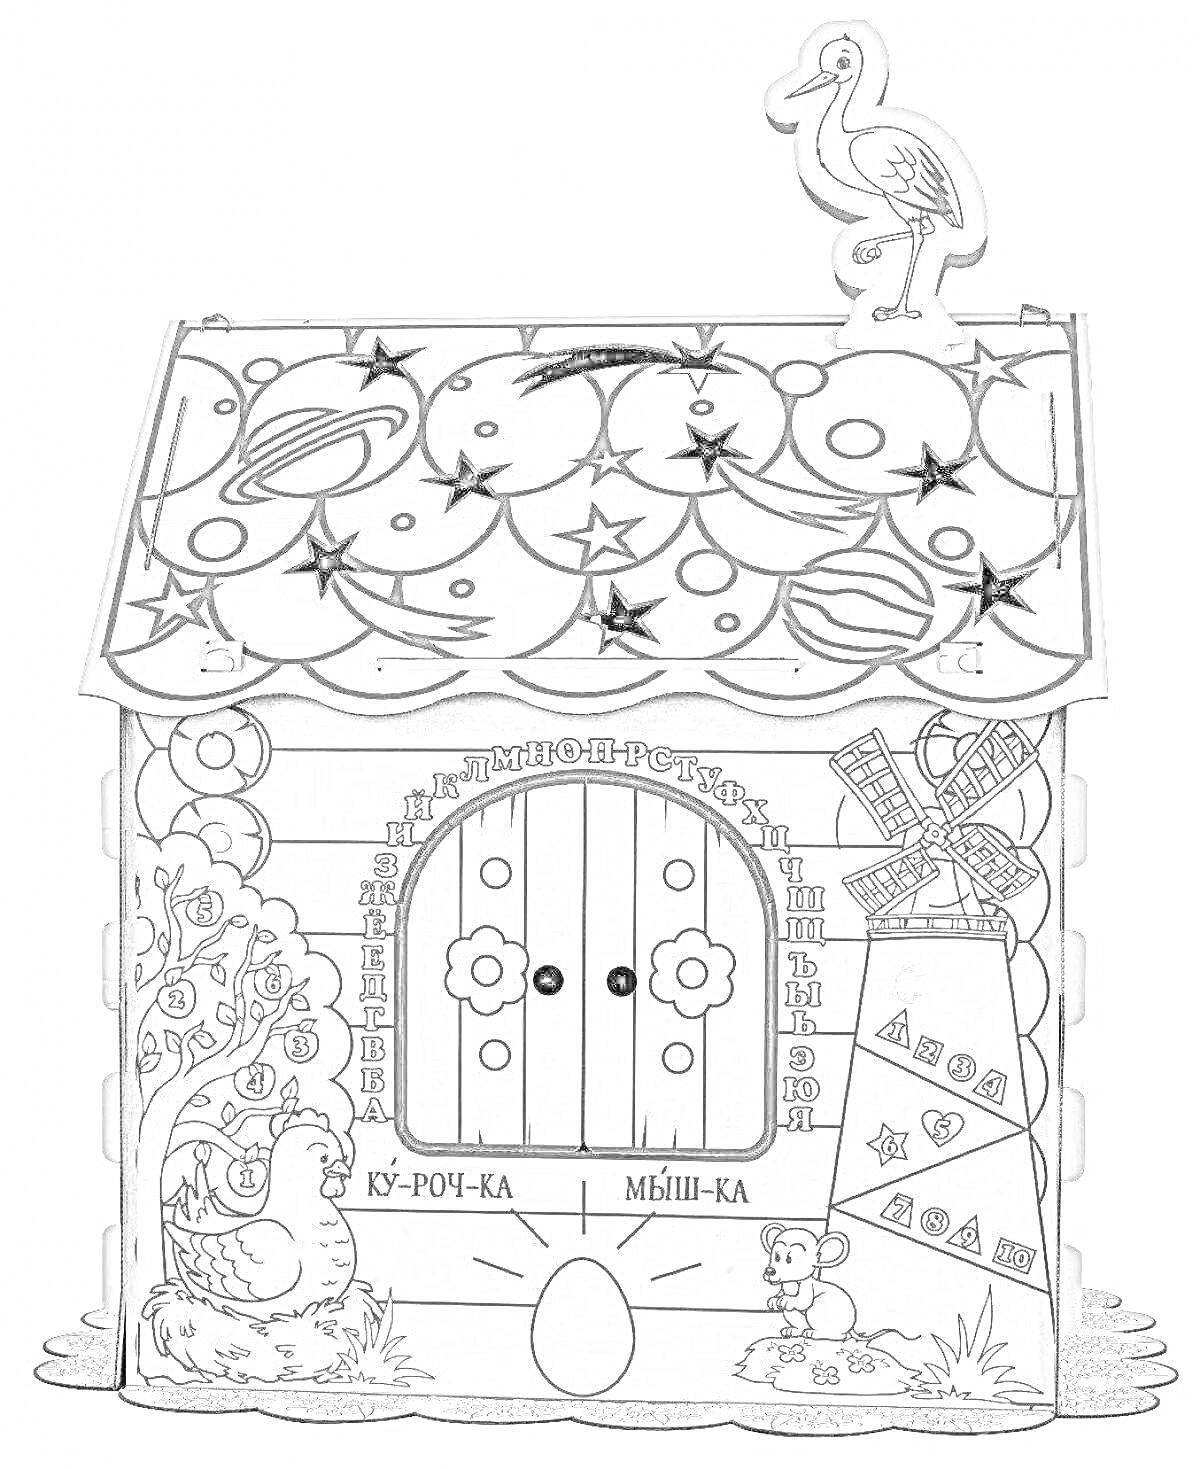 Картонный дом раскраска с дверью, петухом на крыше, декоративным деревом, яйцом перед домом, аистом на крыше и фонтаном в углу.